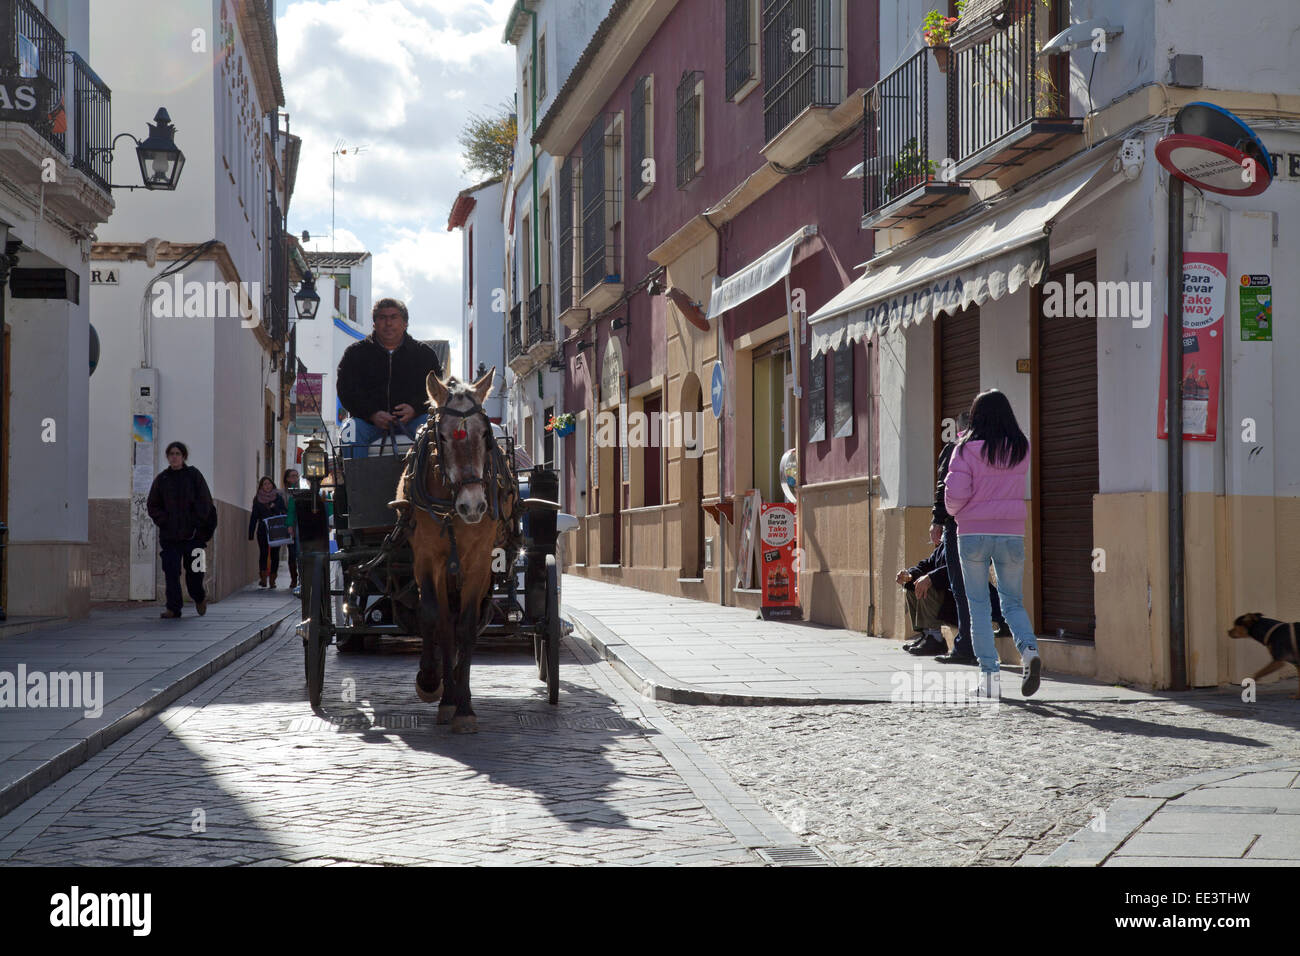 Leben auf der Straße, Córdoba, Andalusien, Spanien: Pferd und Wagen auf gepflasterten Straße Stockfoto